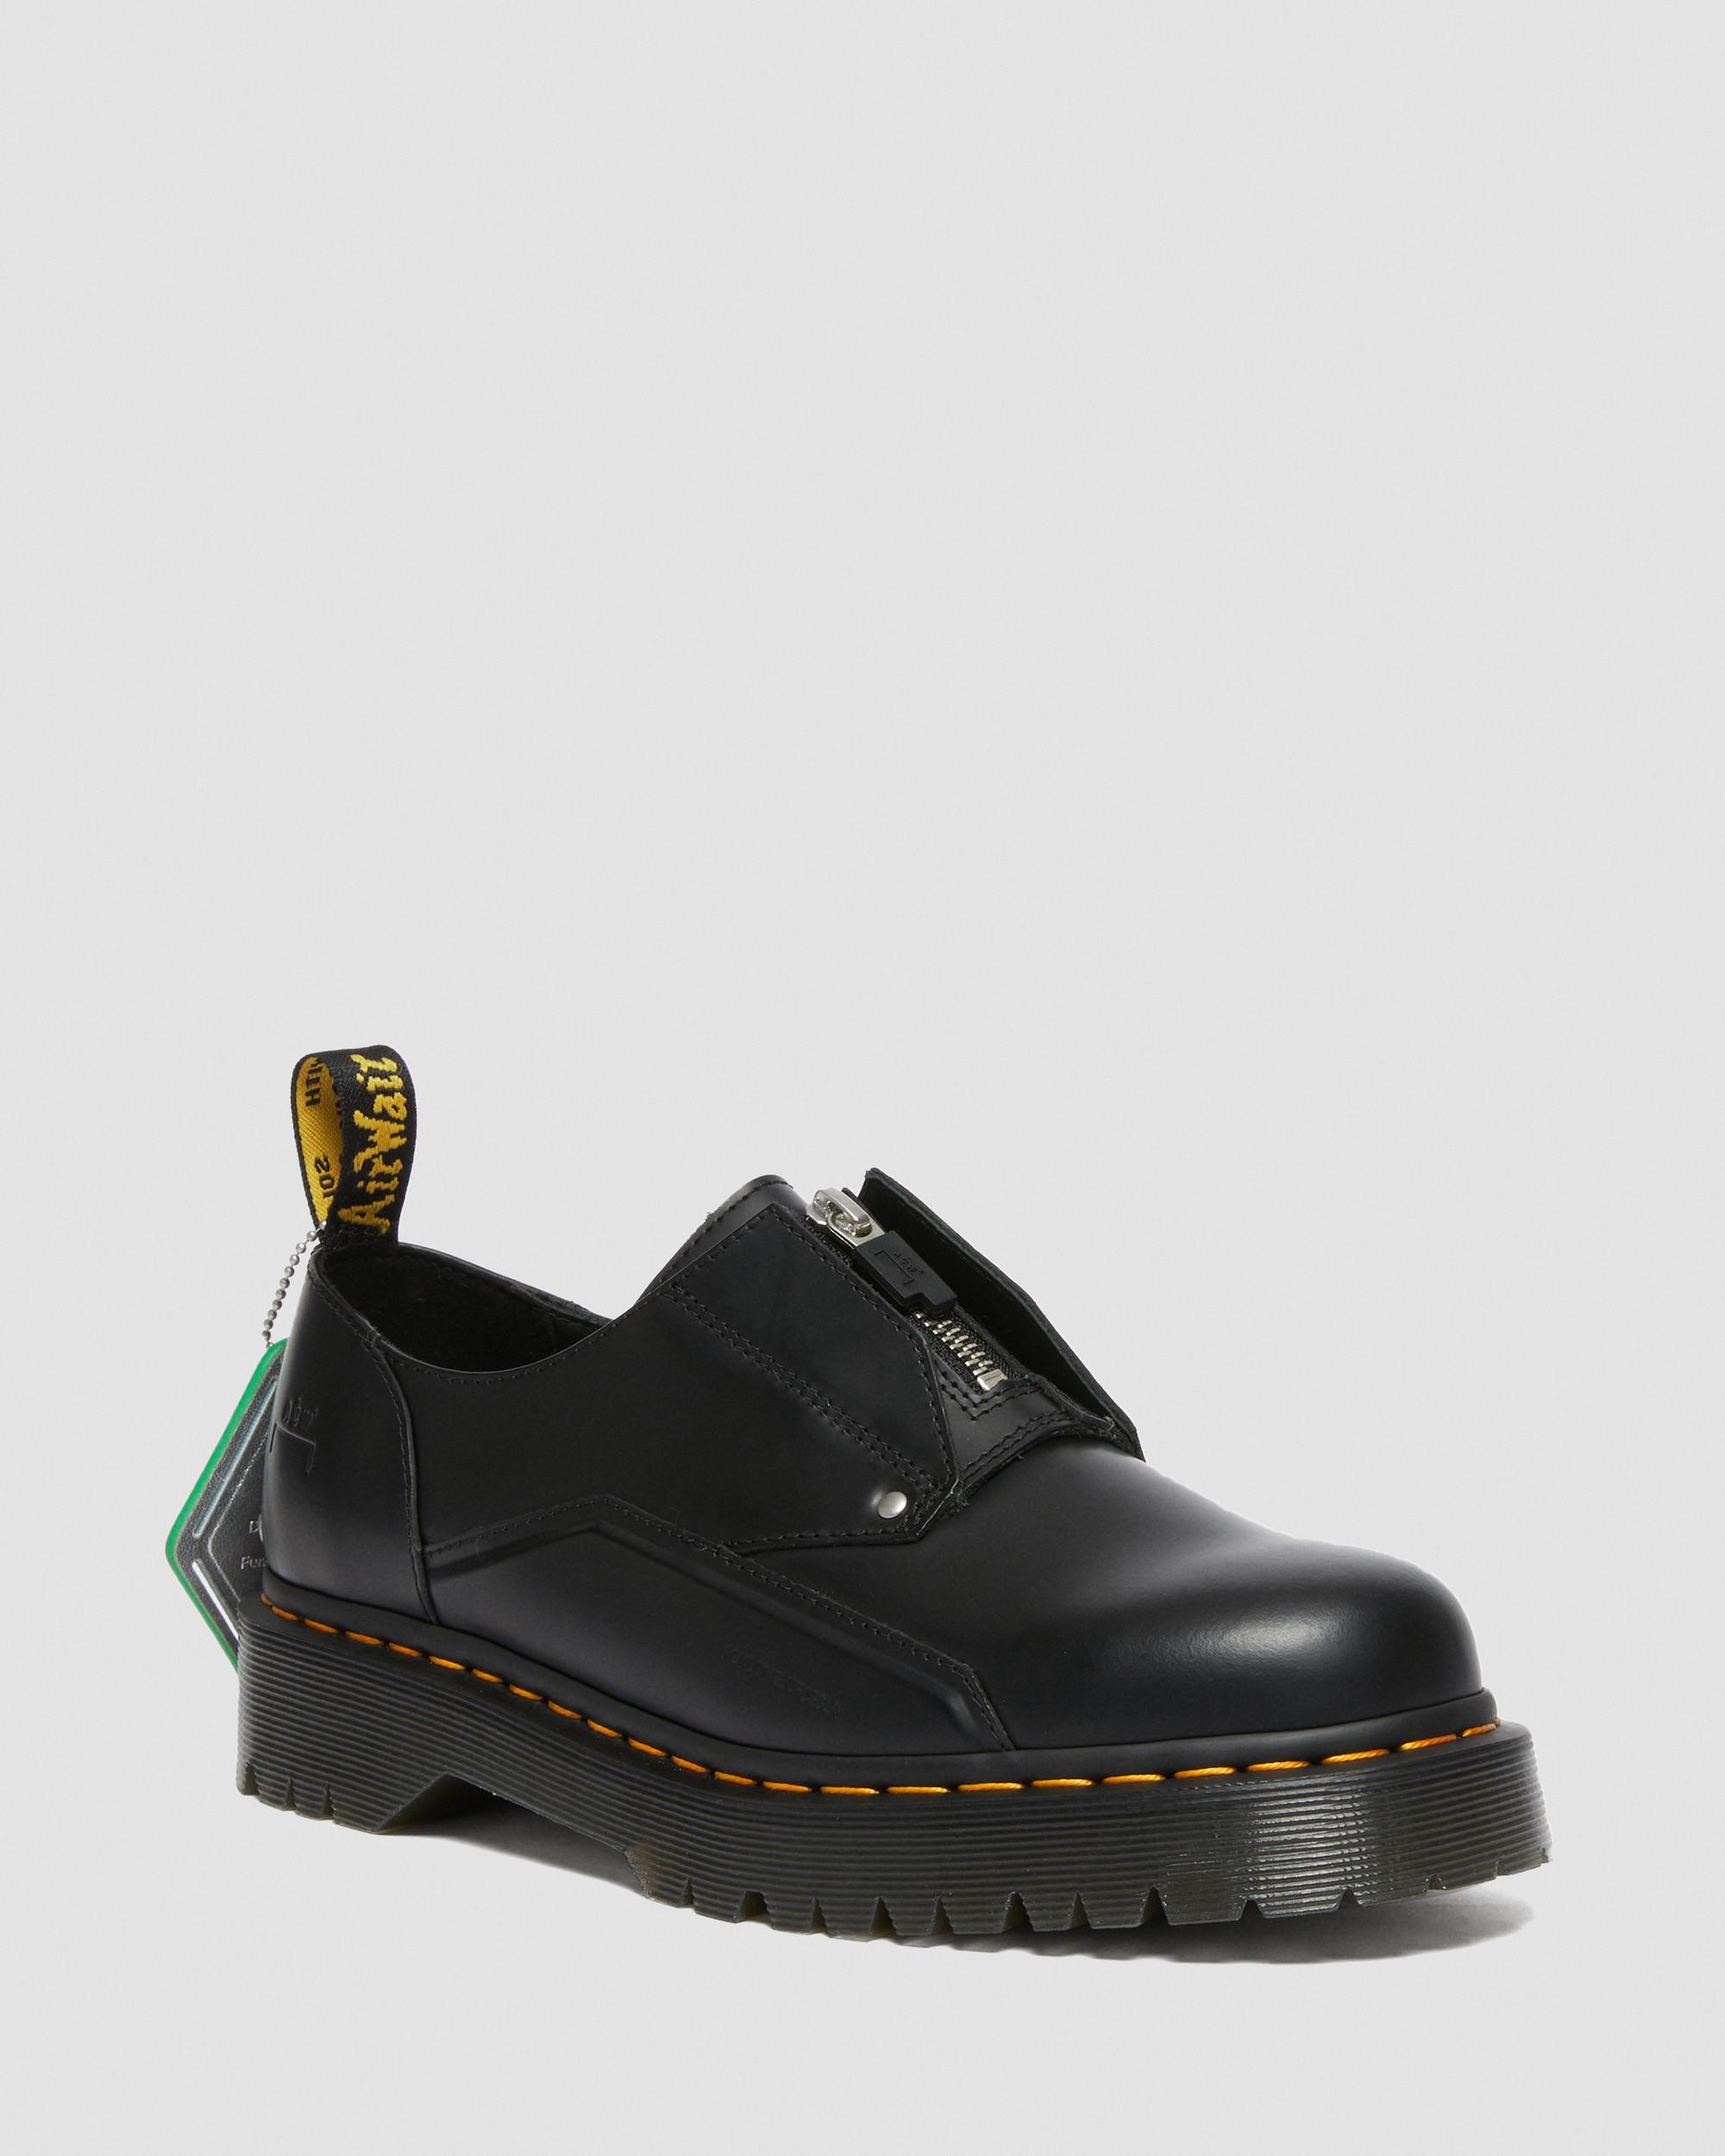 DR MARTENS 1461 Bex ACW* Leather Shoes